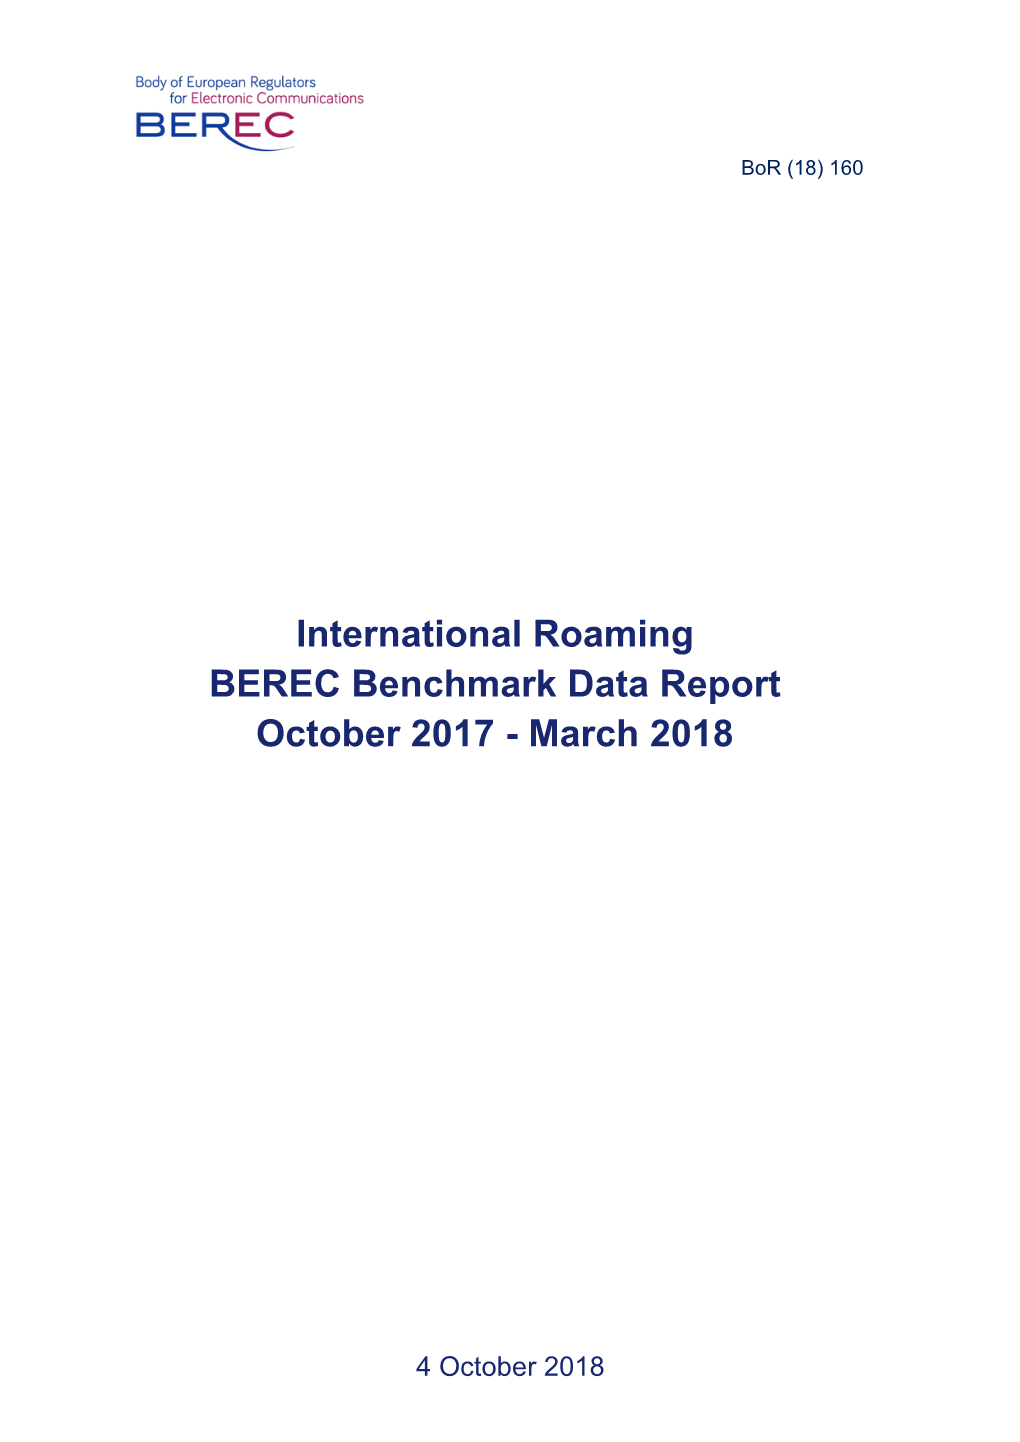 International Roaming BEREC Benchmark Data Report October 2017 - March 2018